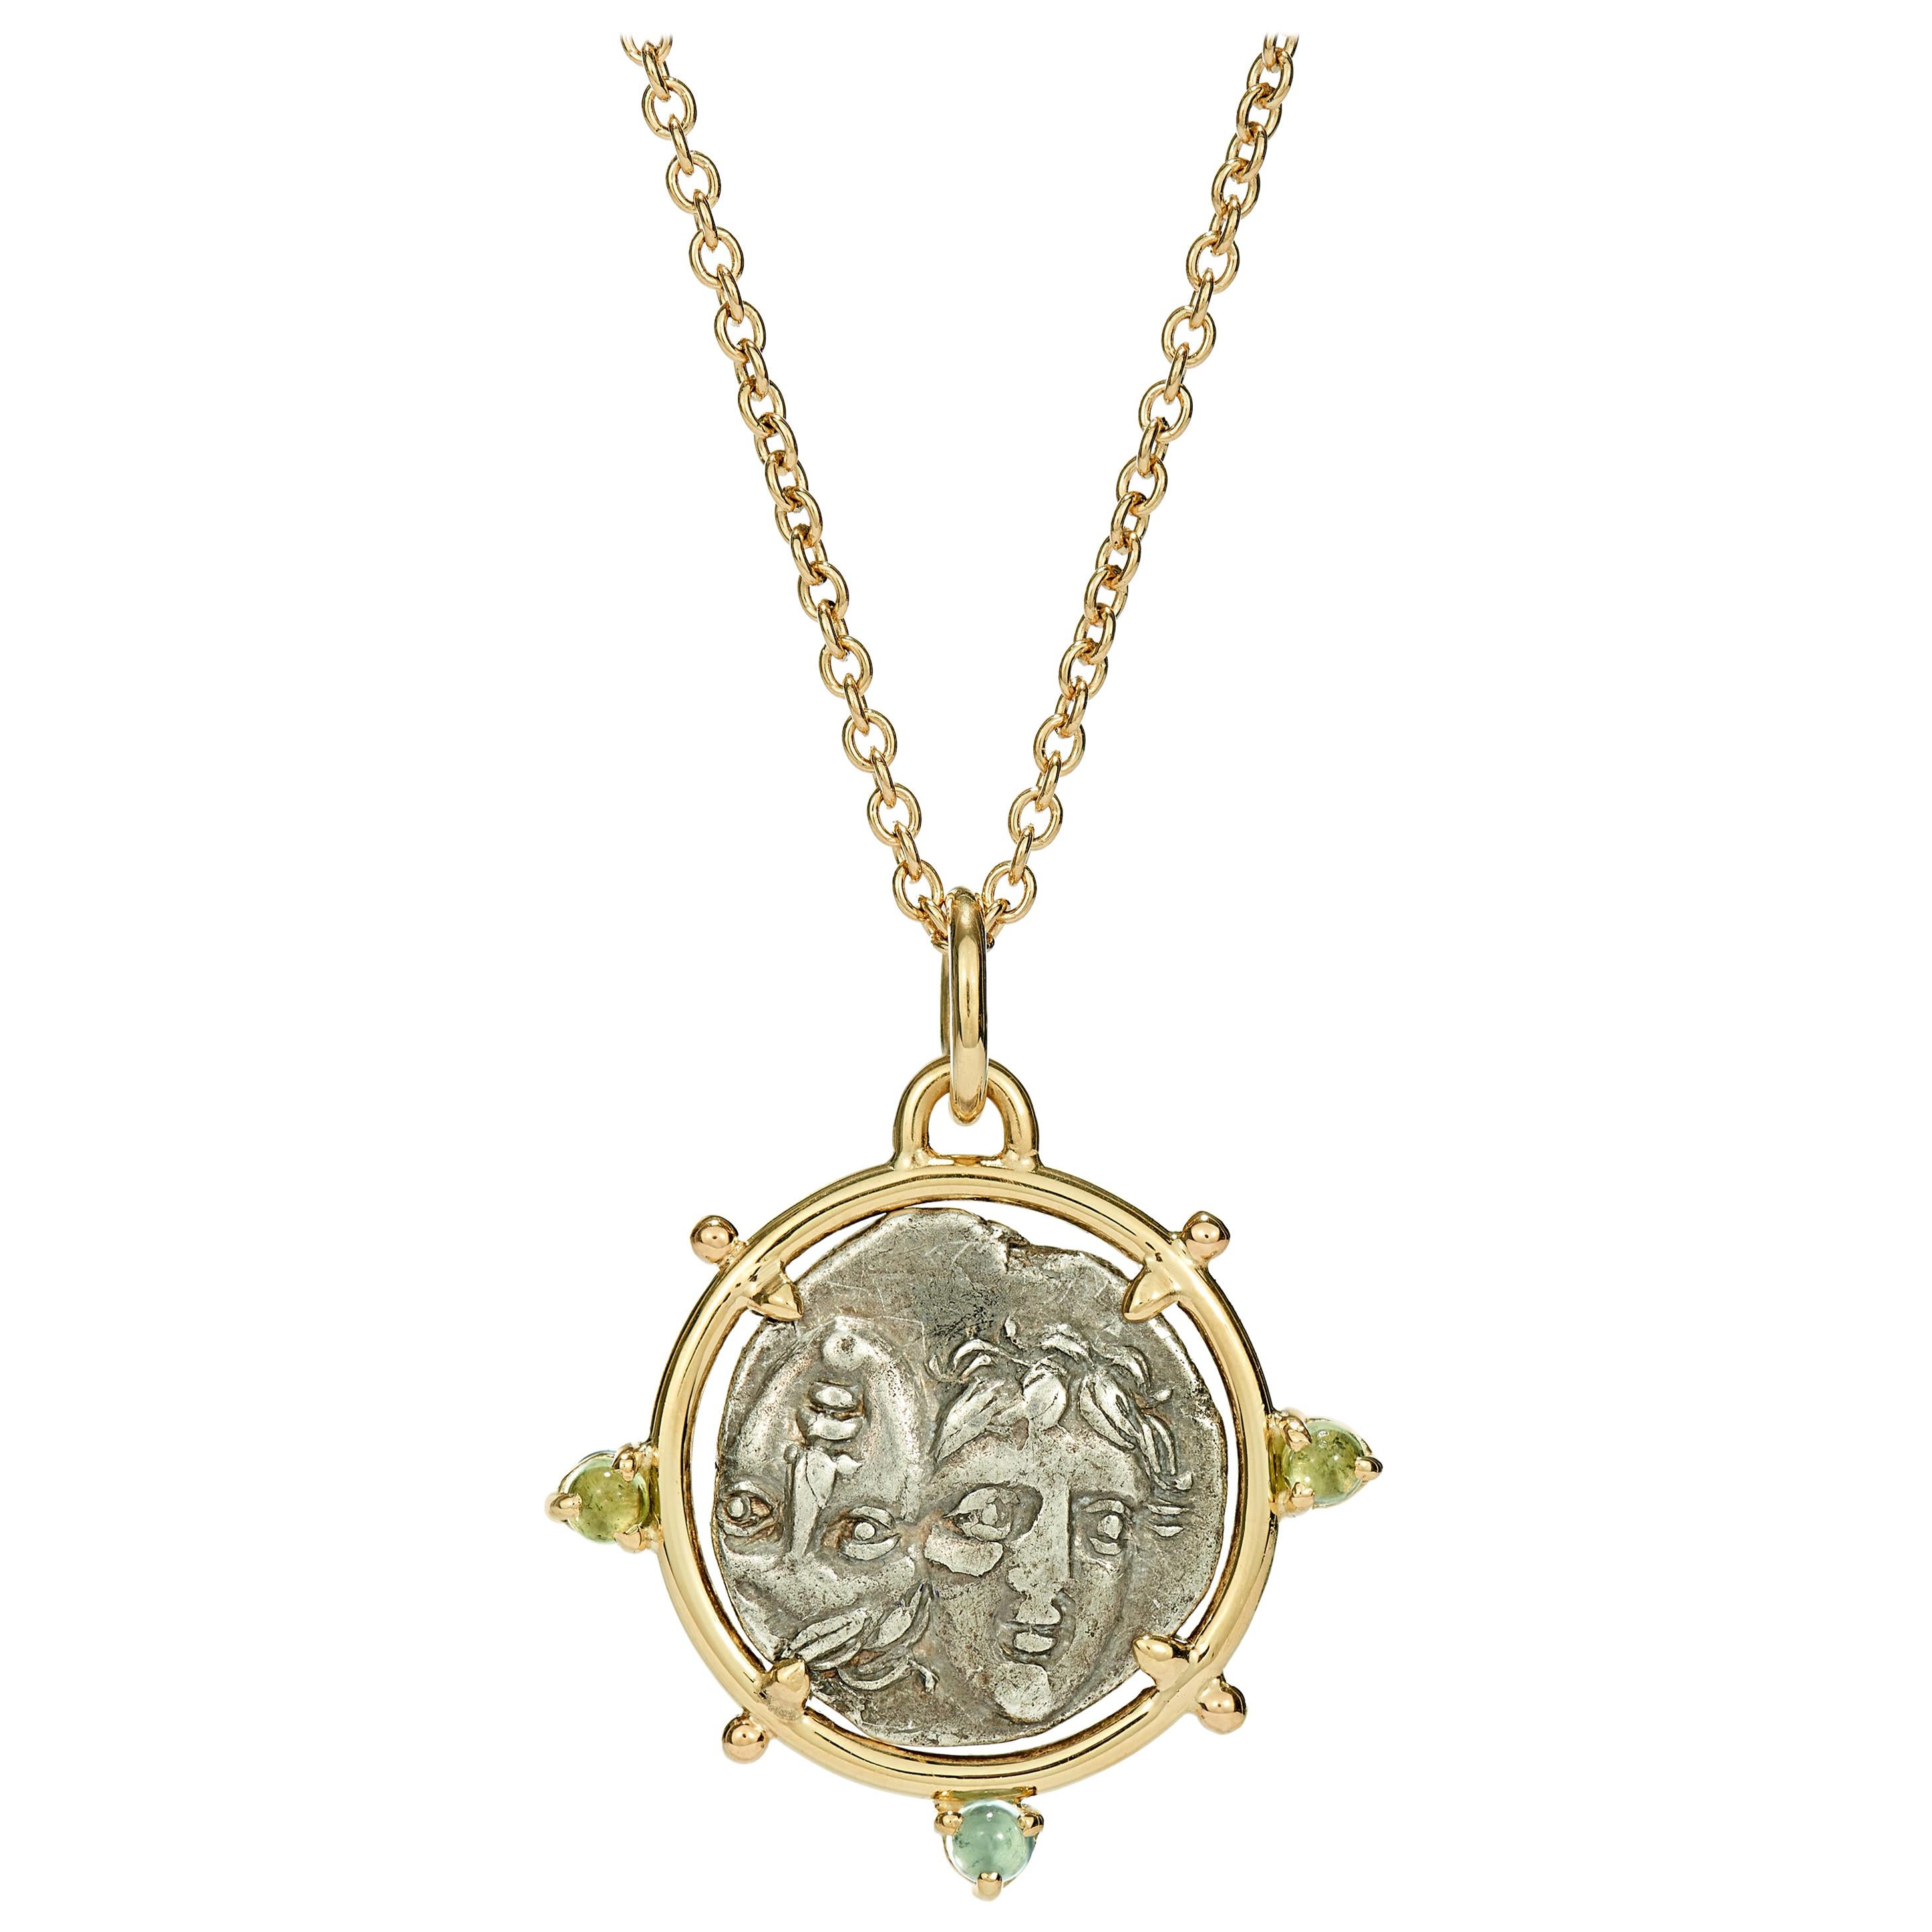 Dubini, collier pendentif jumeaux Dioscuri en argent et or jaune 18 carats avec pièce de monnaie ancienne